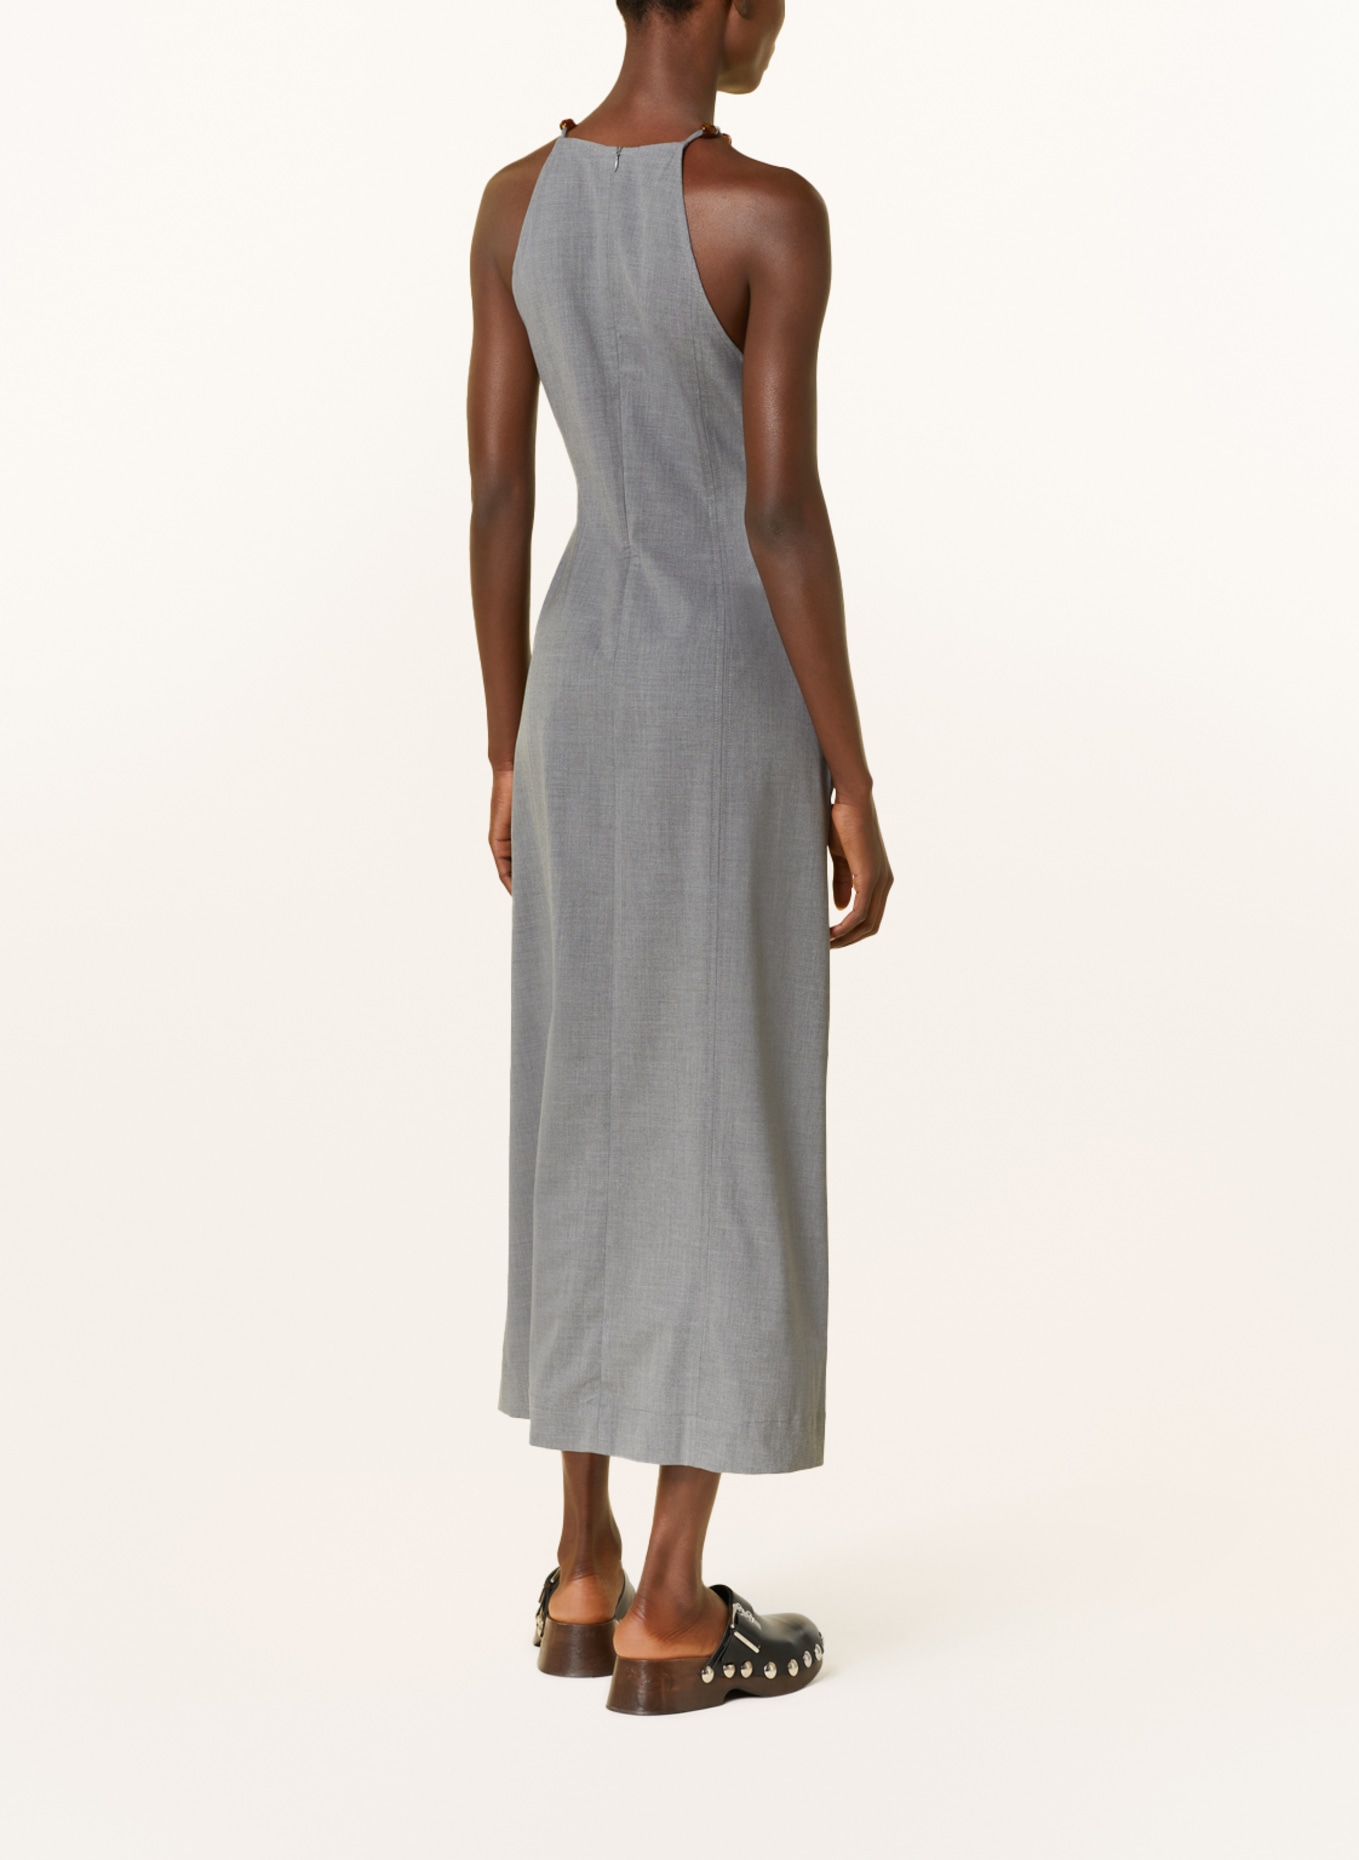 GANNI Kleid DRAPEY mit Schmucksteinen, Farbe: GRAU (Bild 3)